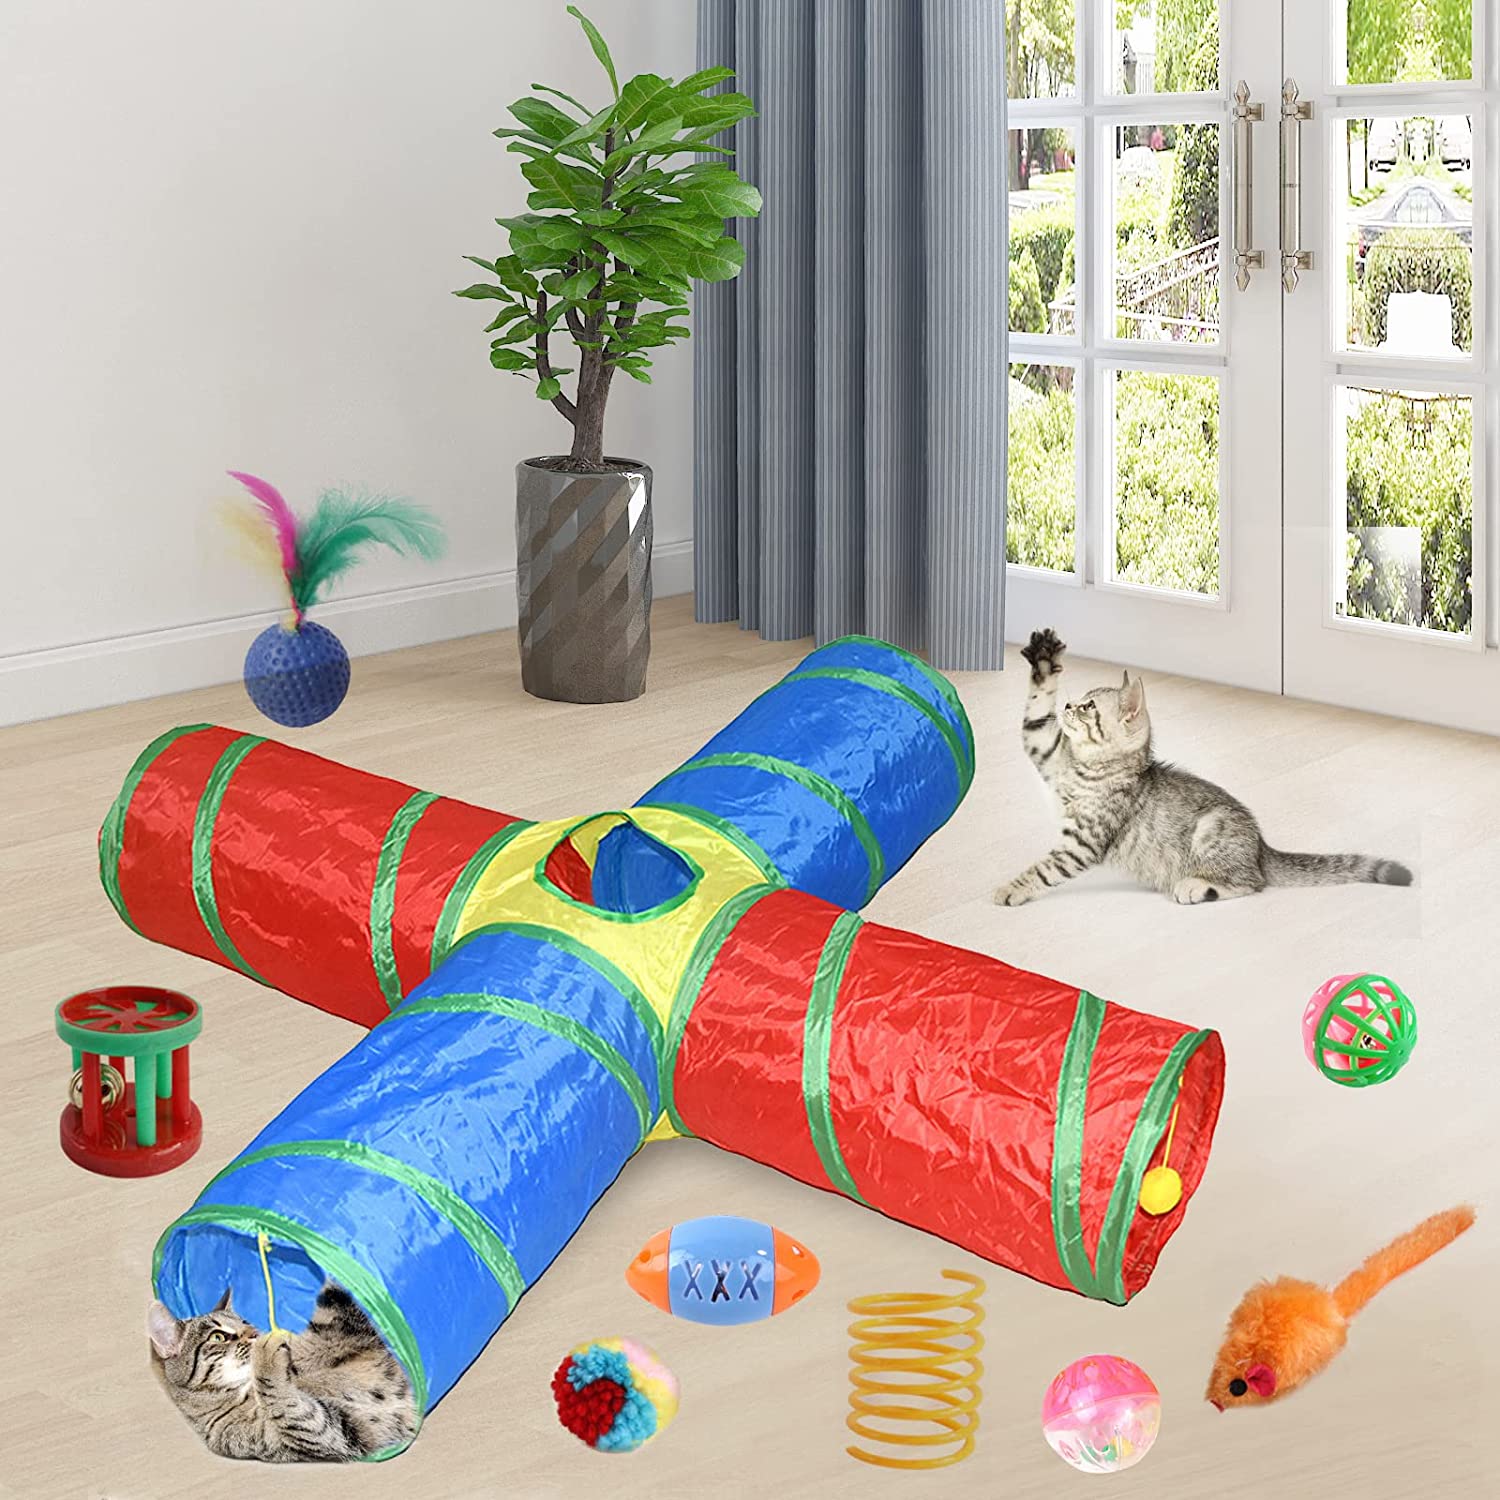  مجموعه محبوب تونل گربه تعامل و سرگرمی بیشتری را برای بچه گربه شما به ارمغان می آورد و ساعت ها ورزش و سرگرمی خود را برای کمک به گربه شما فعال و سالم فراهم می کند.